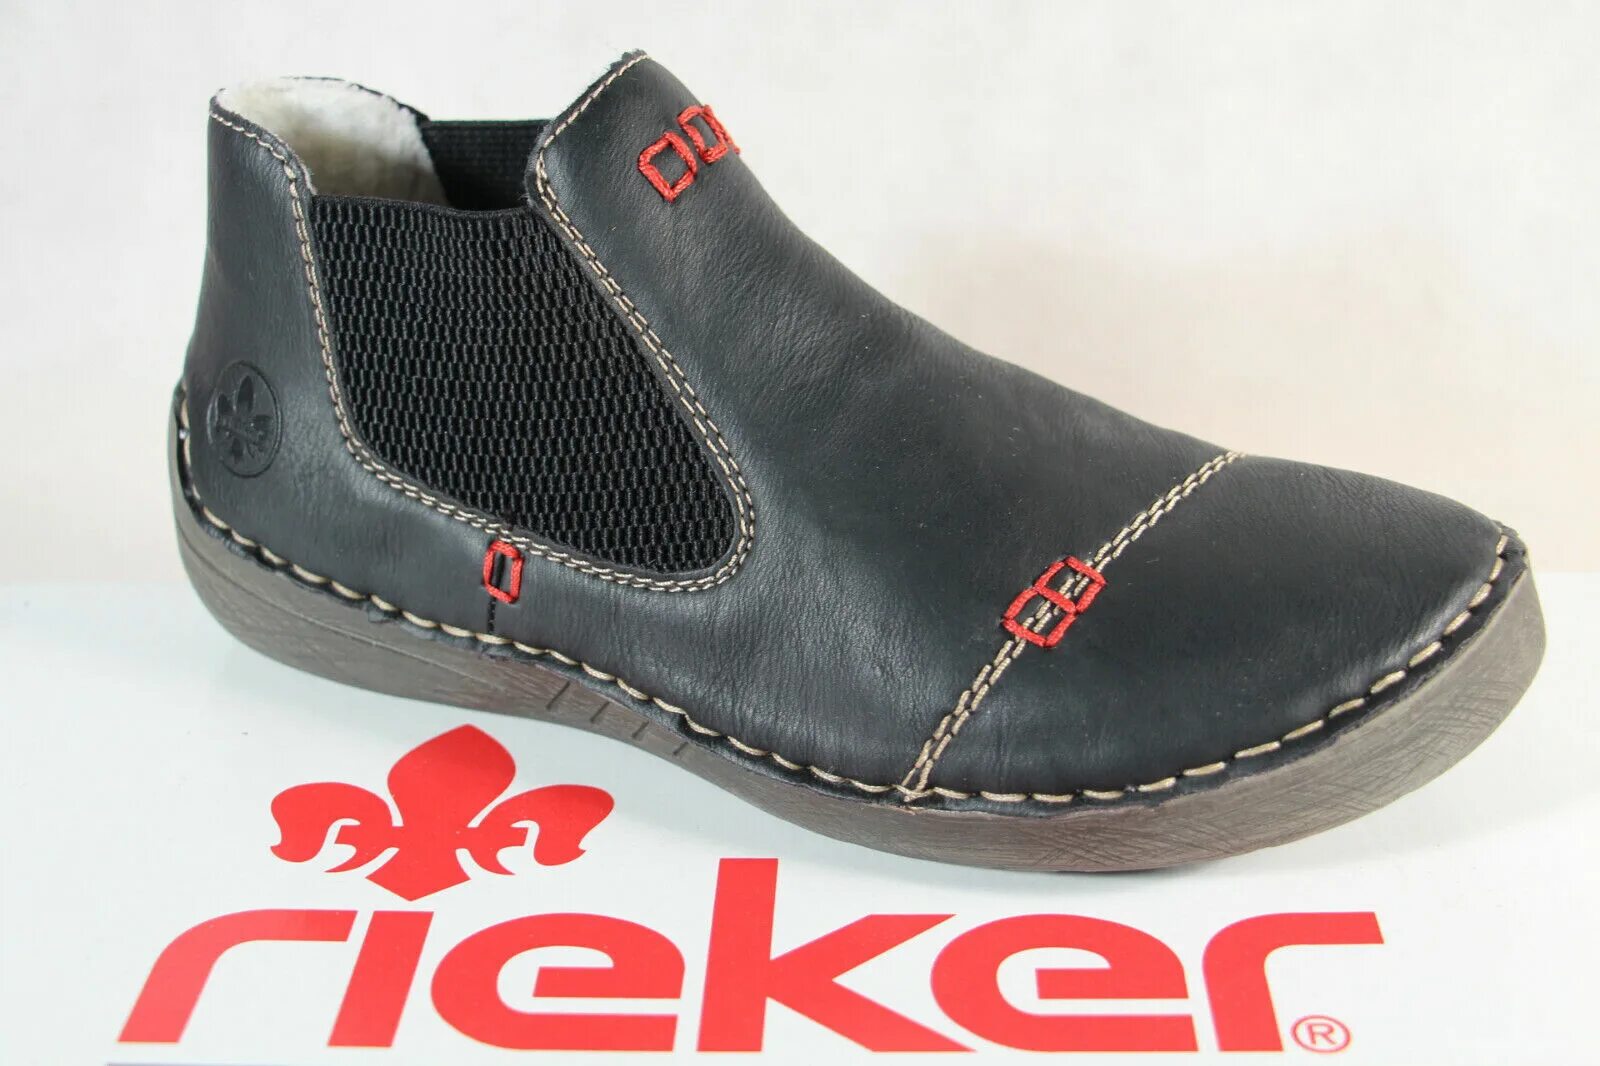 Гарантия райкер на обувь. Rieker обувь wi402-80 41 размер. Rieker x8083-40. Райкер обувь Тип подошвы. Мужская обувь рикер на авито